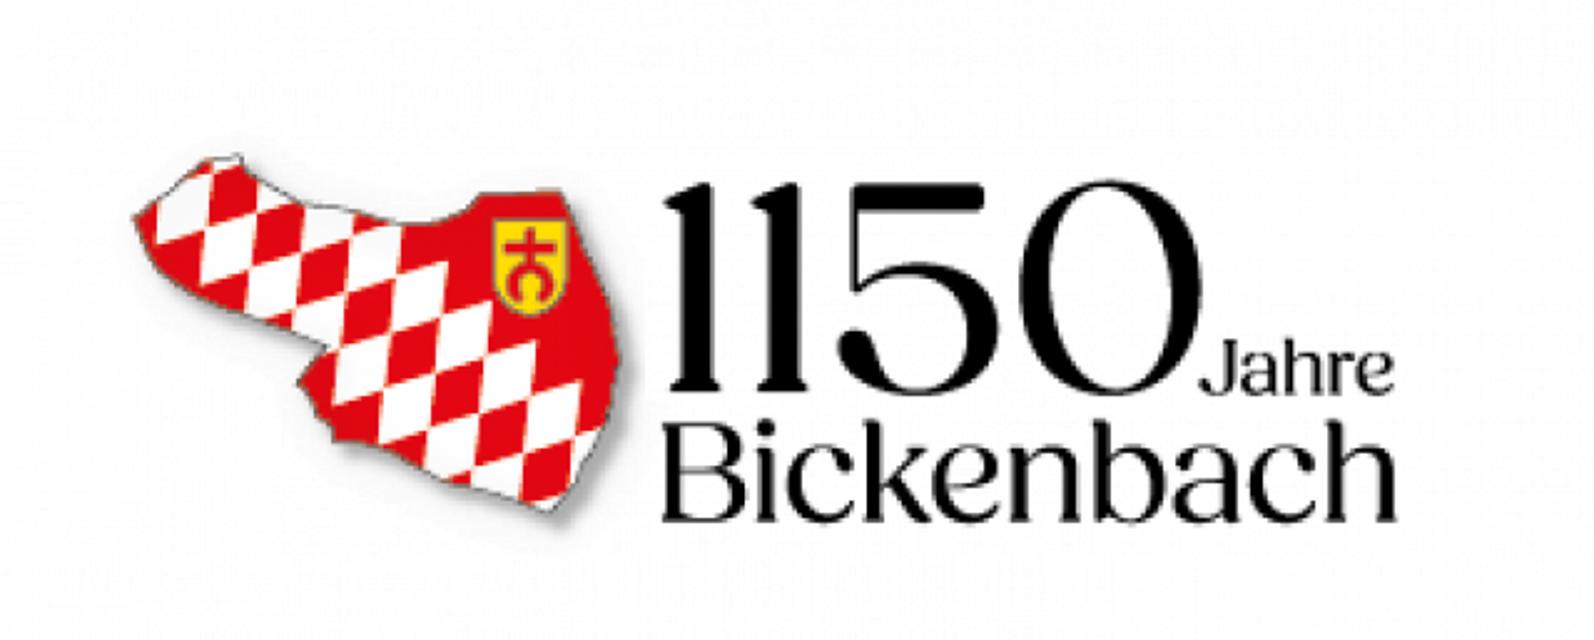 Anlässlich des 1150-jährigen Jubiläums Bickenbachs findet vom 5. bis 7. Juli 2024 die Feierlichkeit auf dem Jagdschloss Gelände statt. Hier beteiligen sich die Bickenbacher Vereine mit Essens- und Getränkeständen.